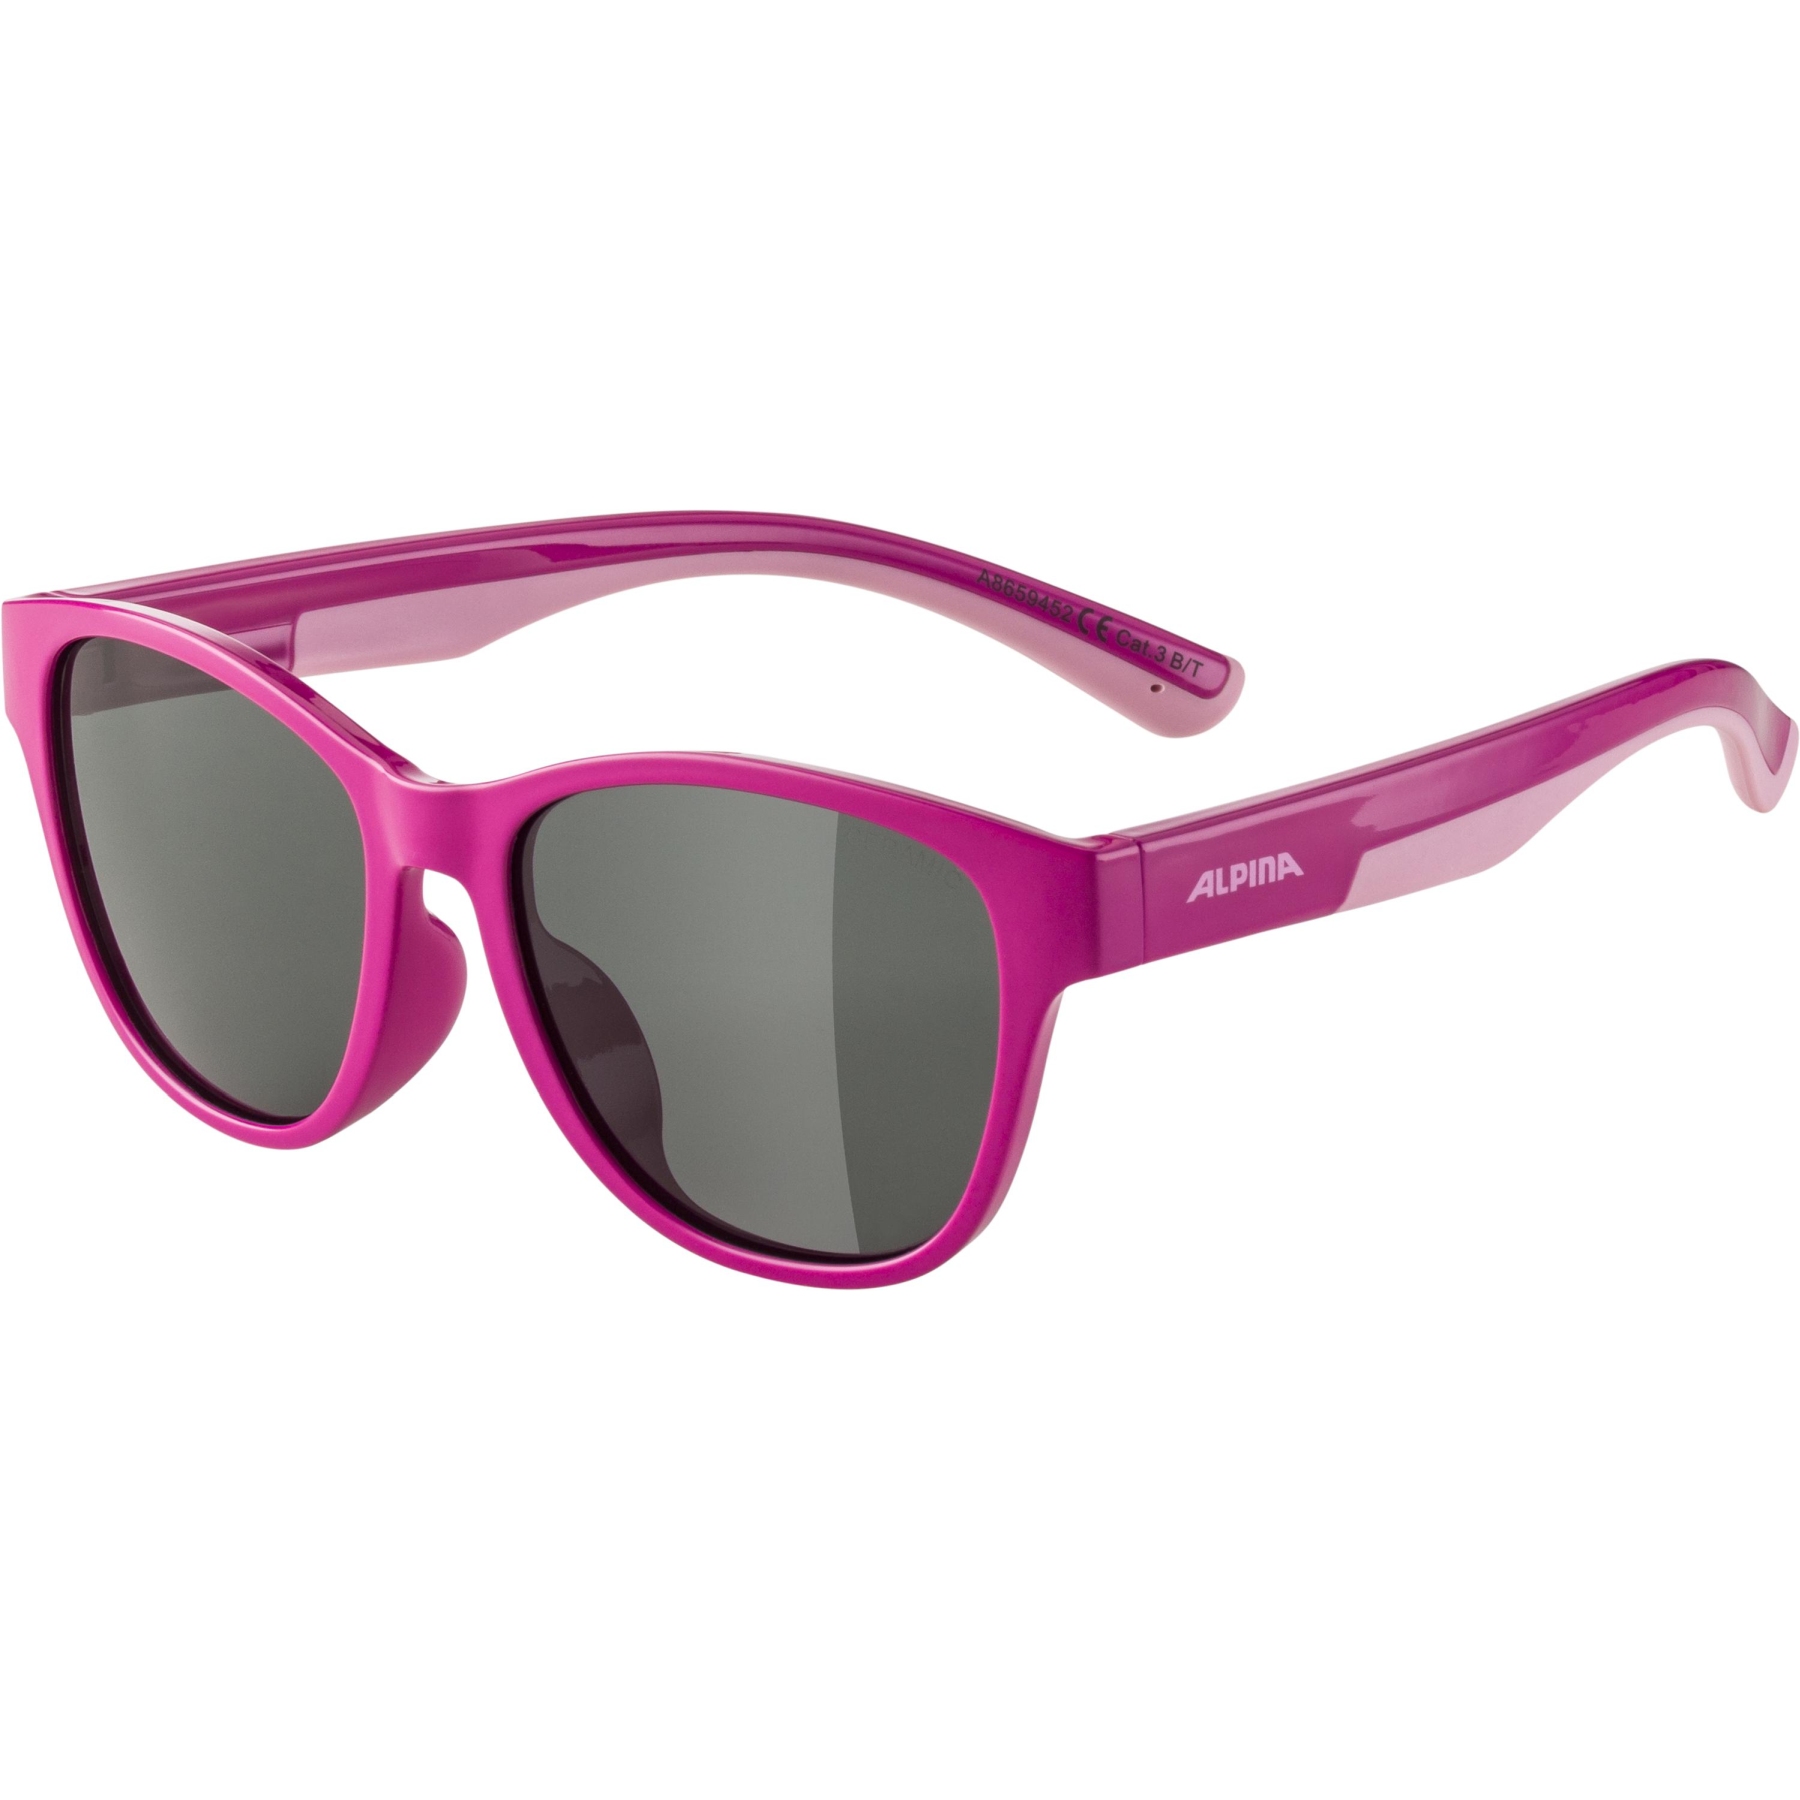 Produktbild von Alpina Flexxy Cool Kids II Kinderbrille - pink-rose / black